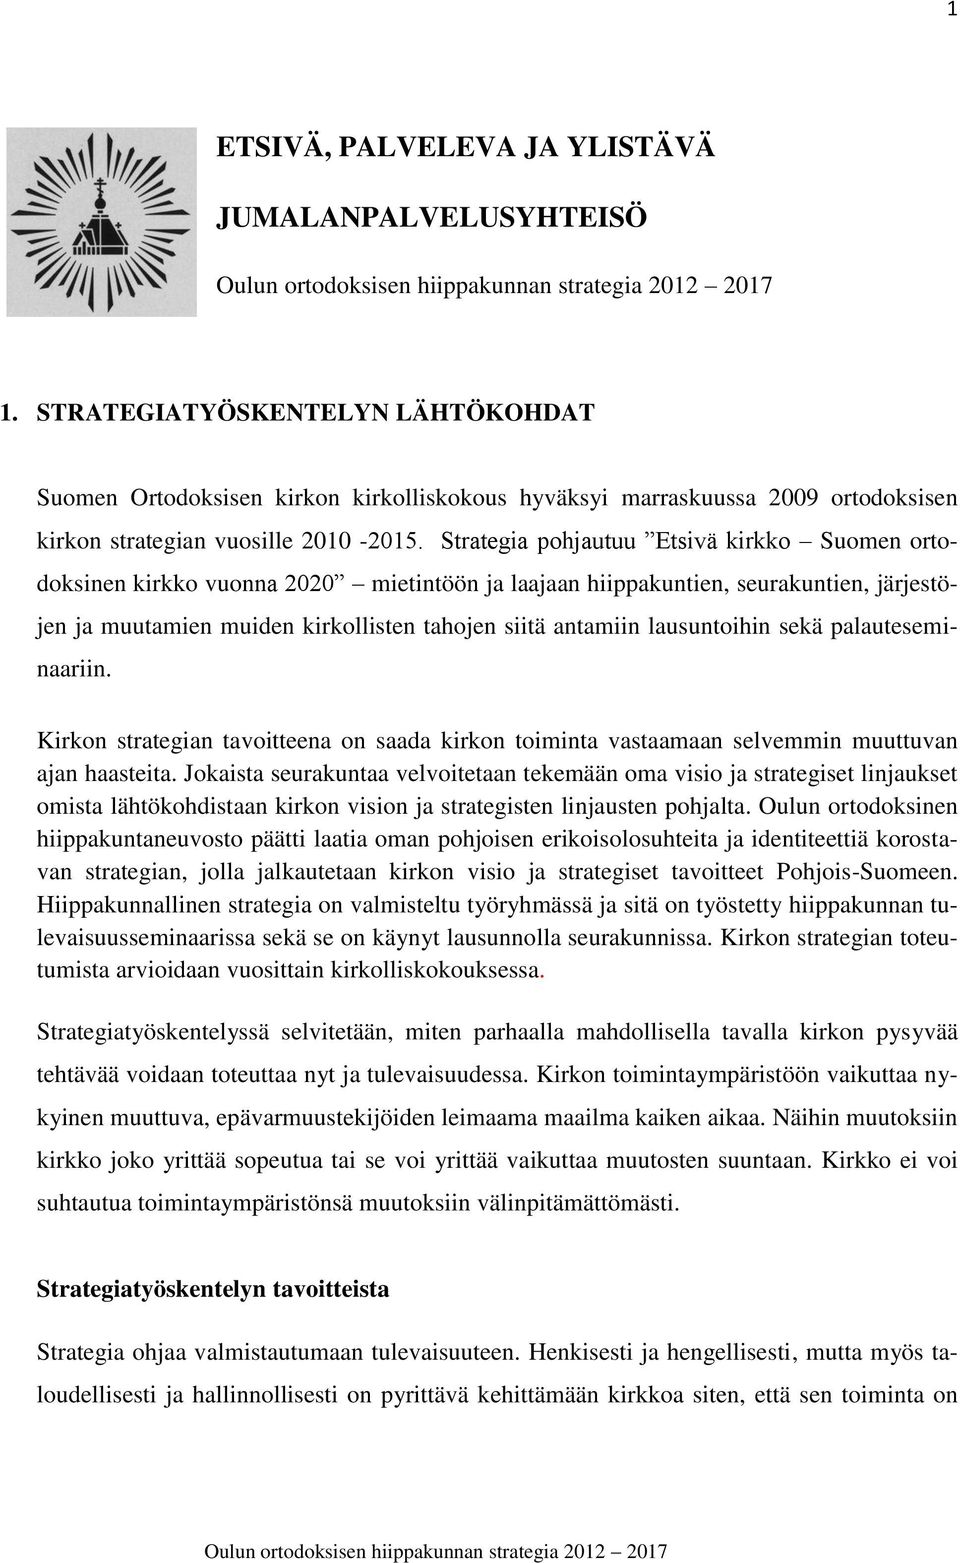 Strategia pohjautuu Etsivä kirkko Suomen ortodoksinen kirkko vuonna 2020 mietintöön ja laajaan hiippakuntien, seurakuntien, järjestöjen ja muutamien muiden kirkollisten tahojen siitä antamiin